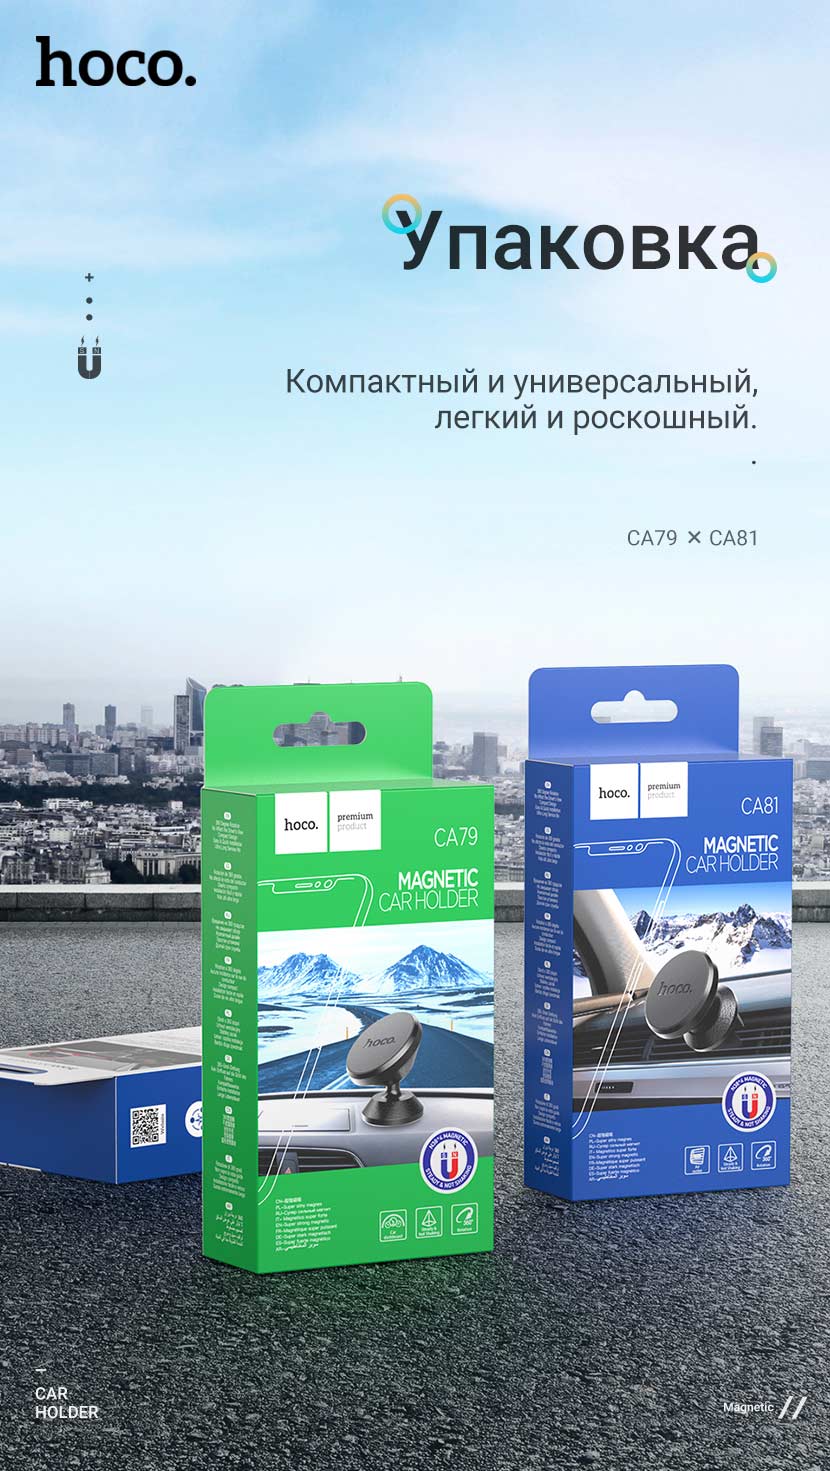 hoco news ca79 ca81 magnetic car holders package ru